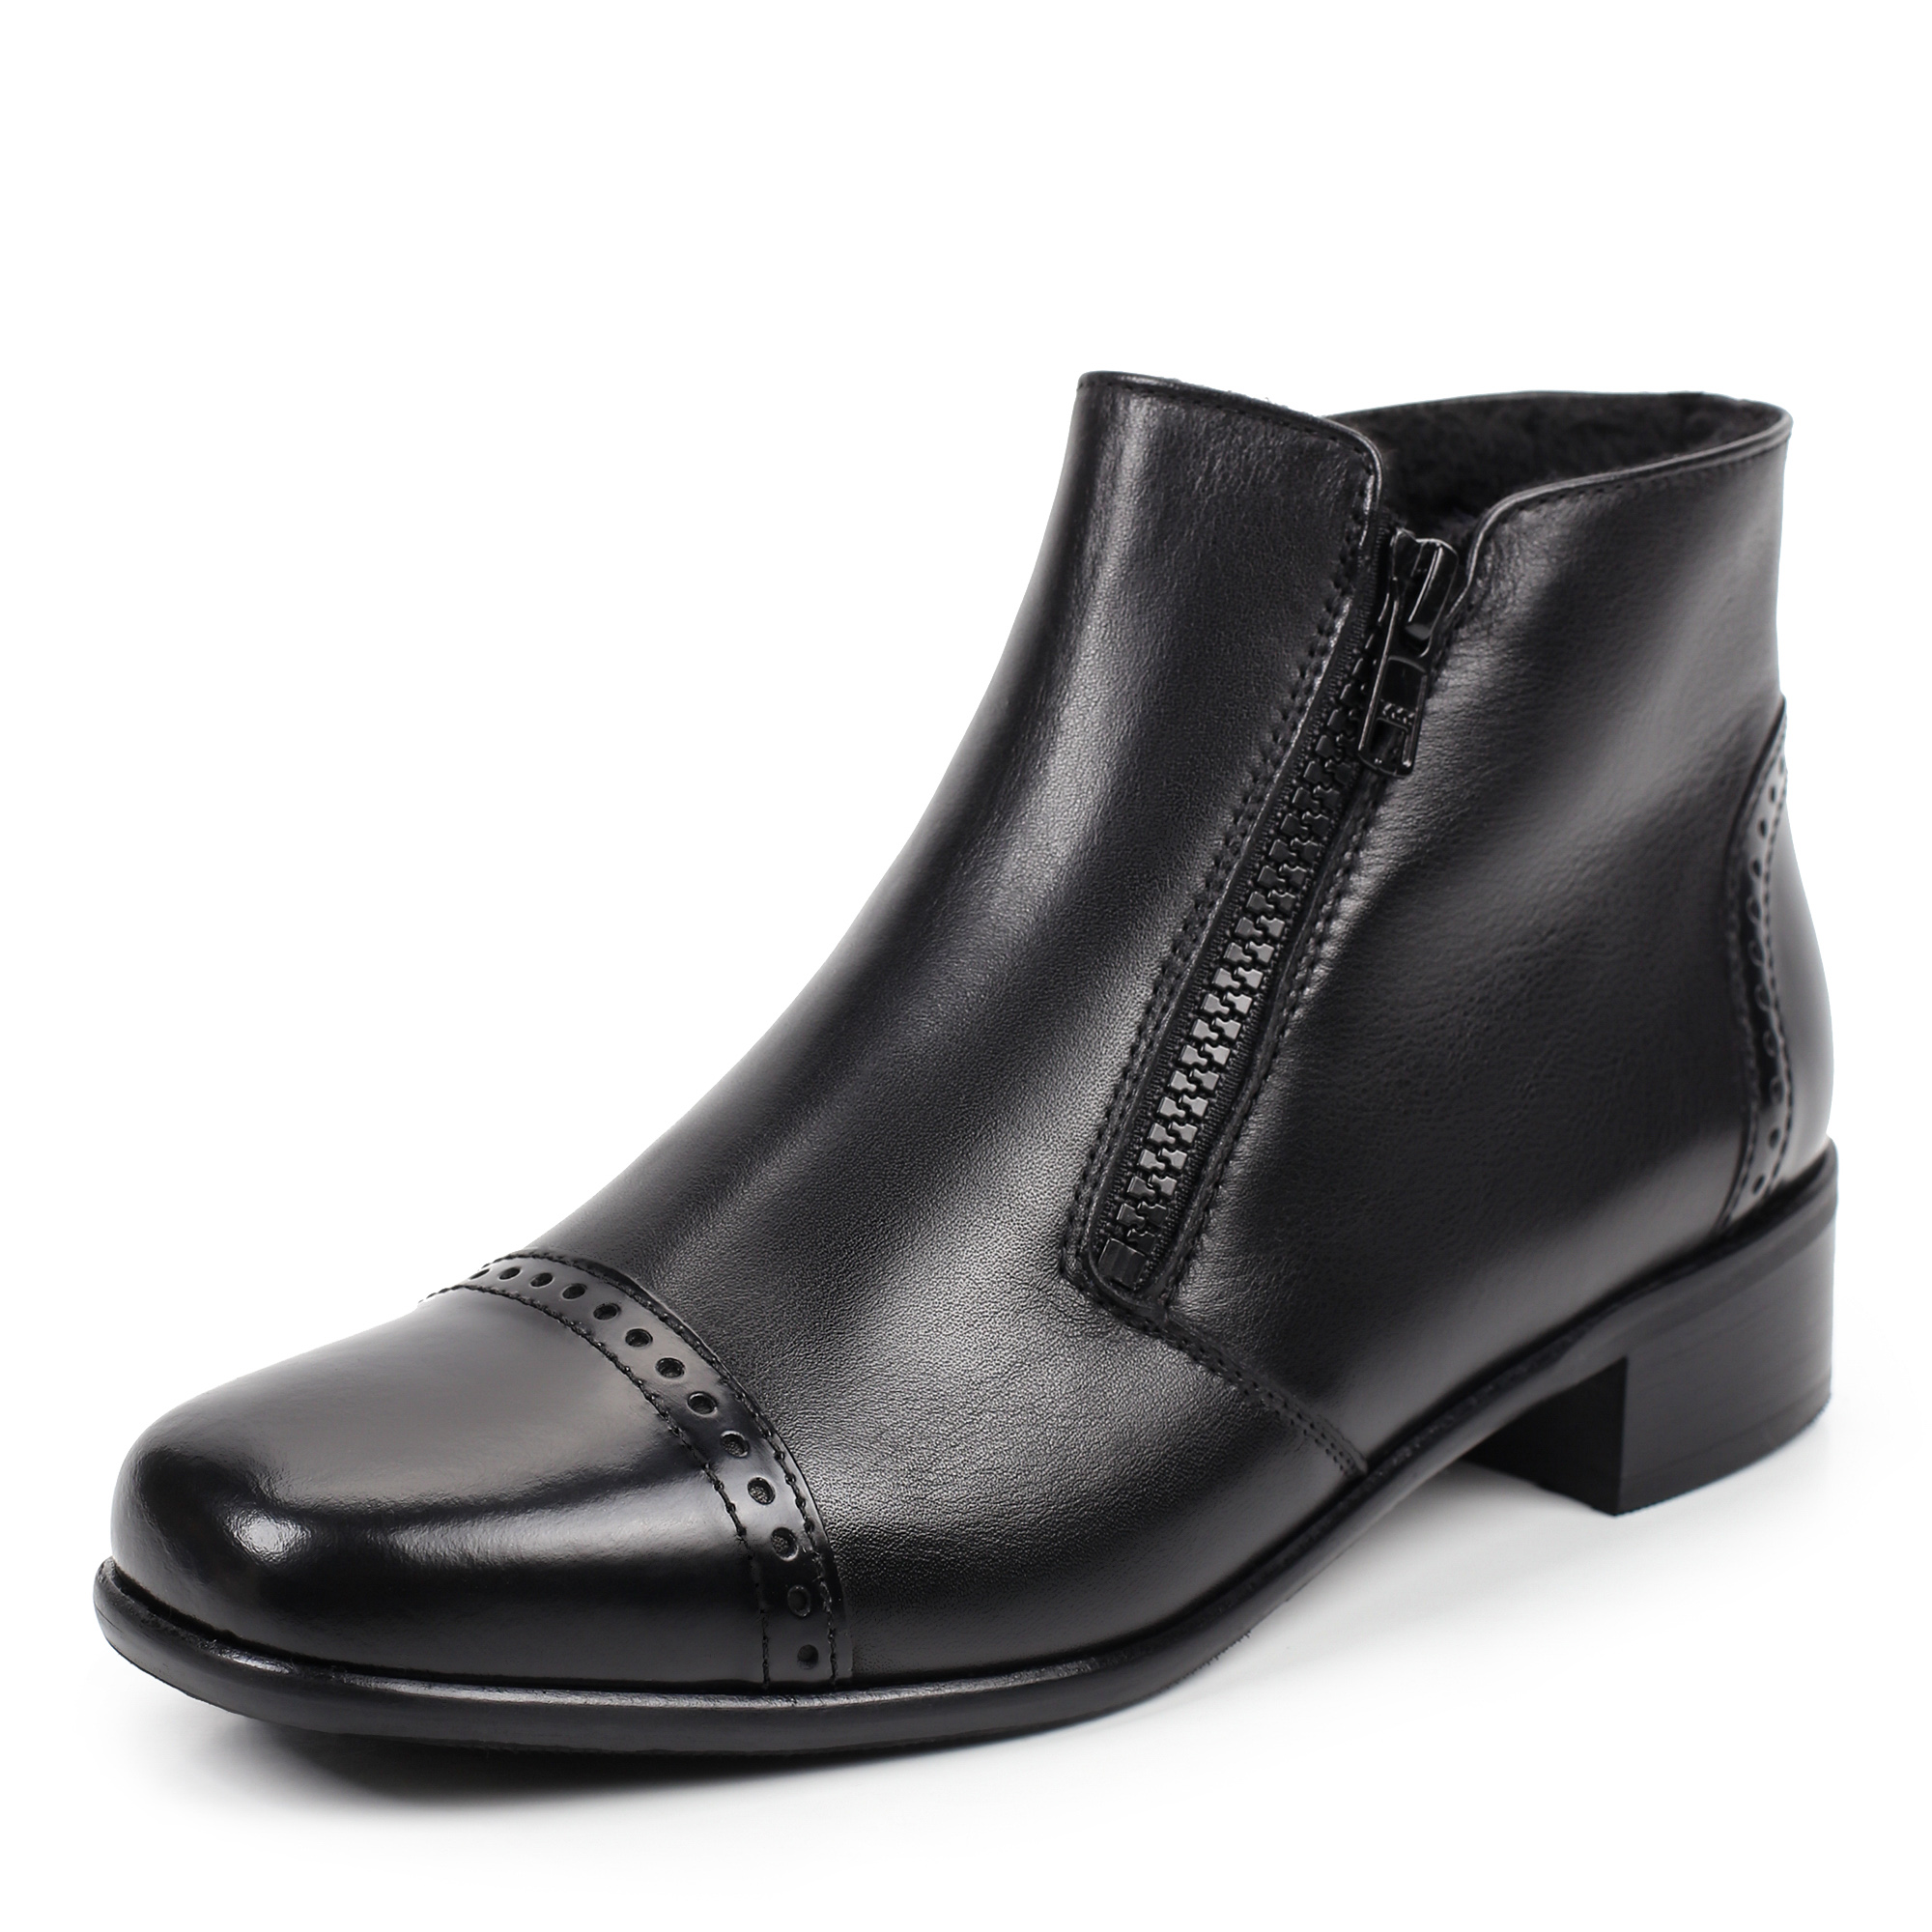 Ботинки Semler C39386-203-001, цвет черный, размер 37 - фото 2